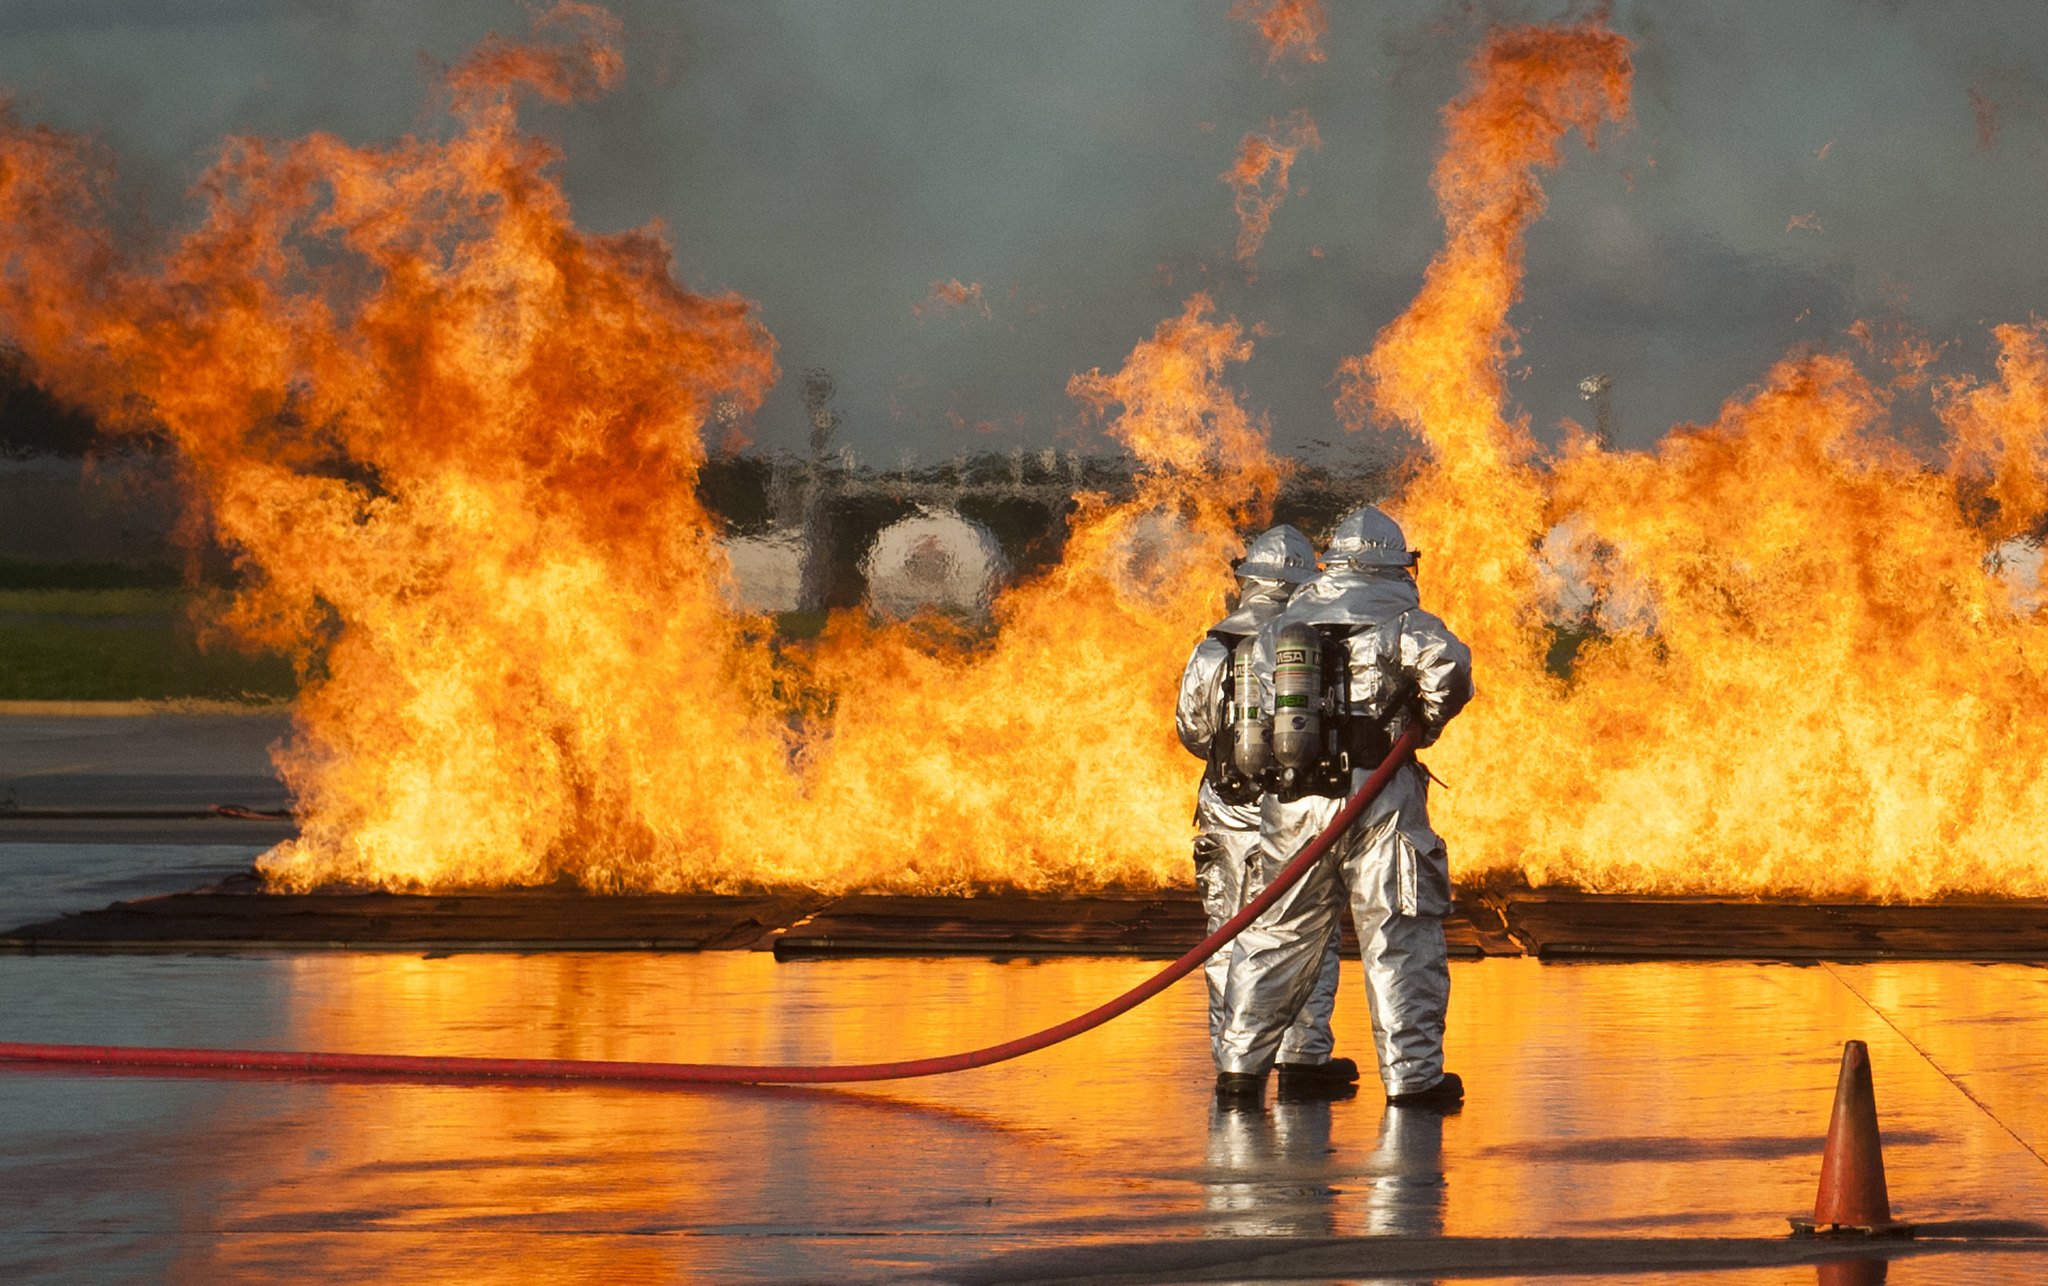 Bomberos apagando fuego en aeropuerto. | Imagen: Flickr